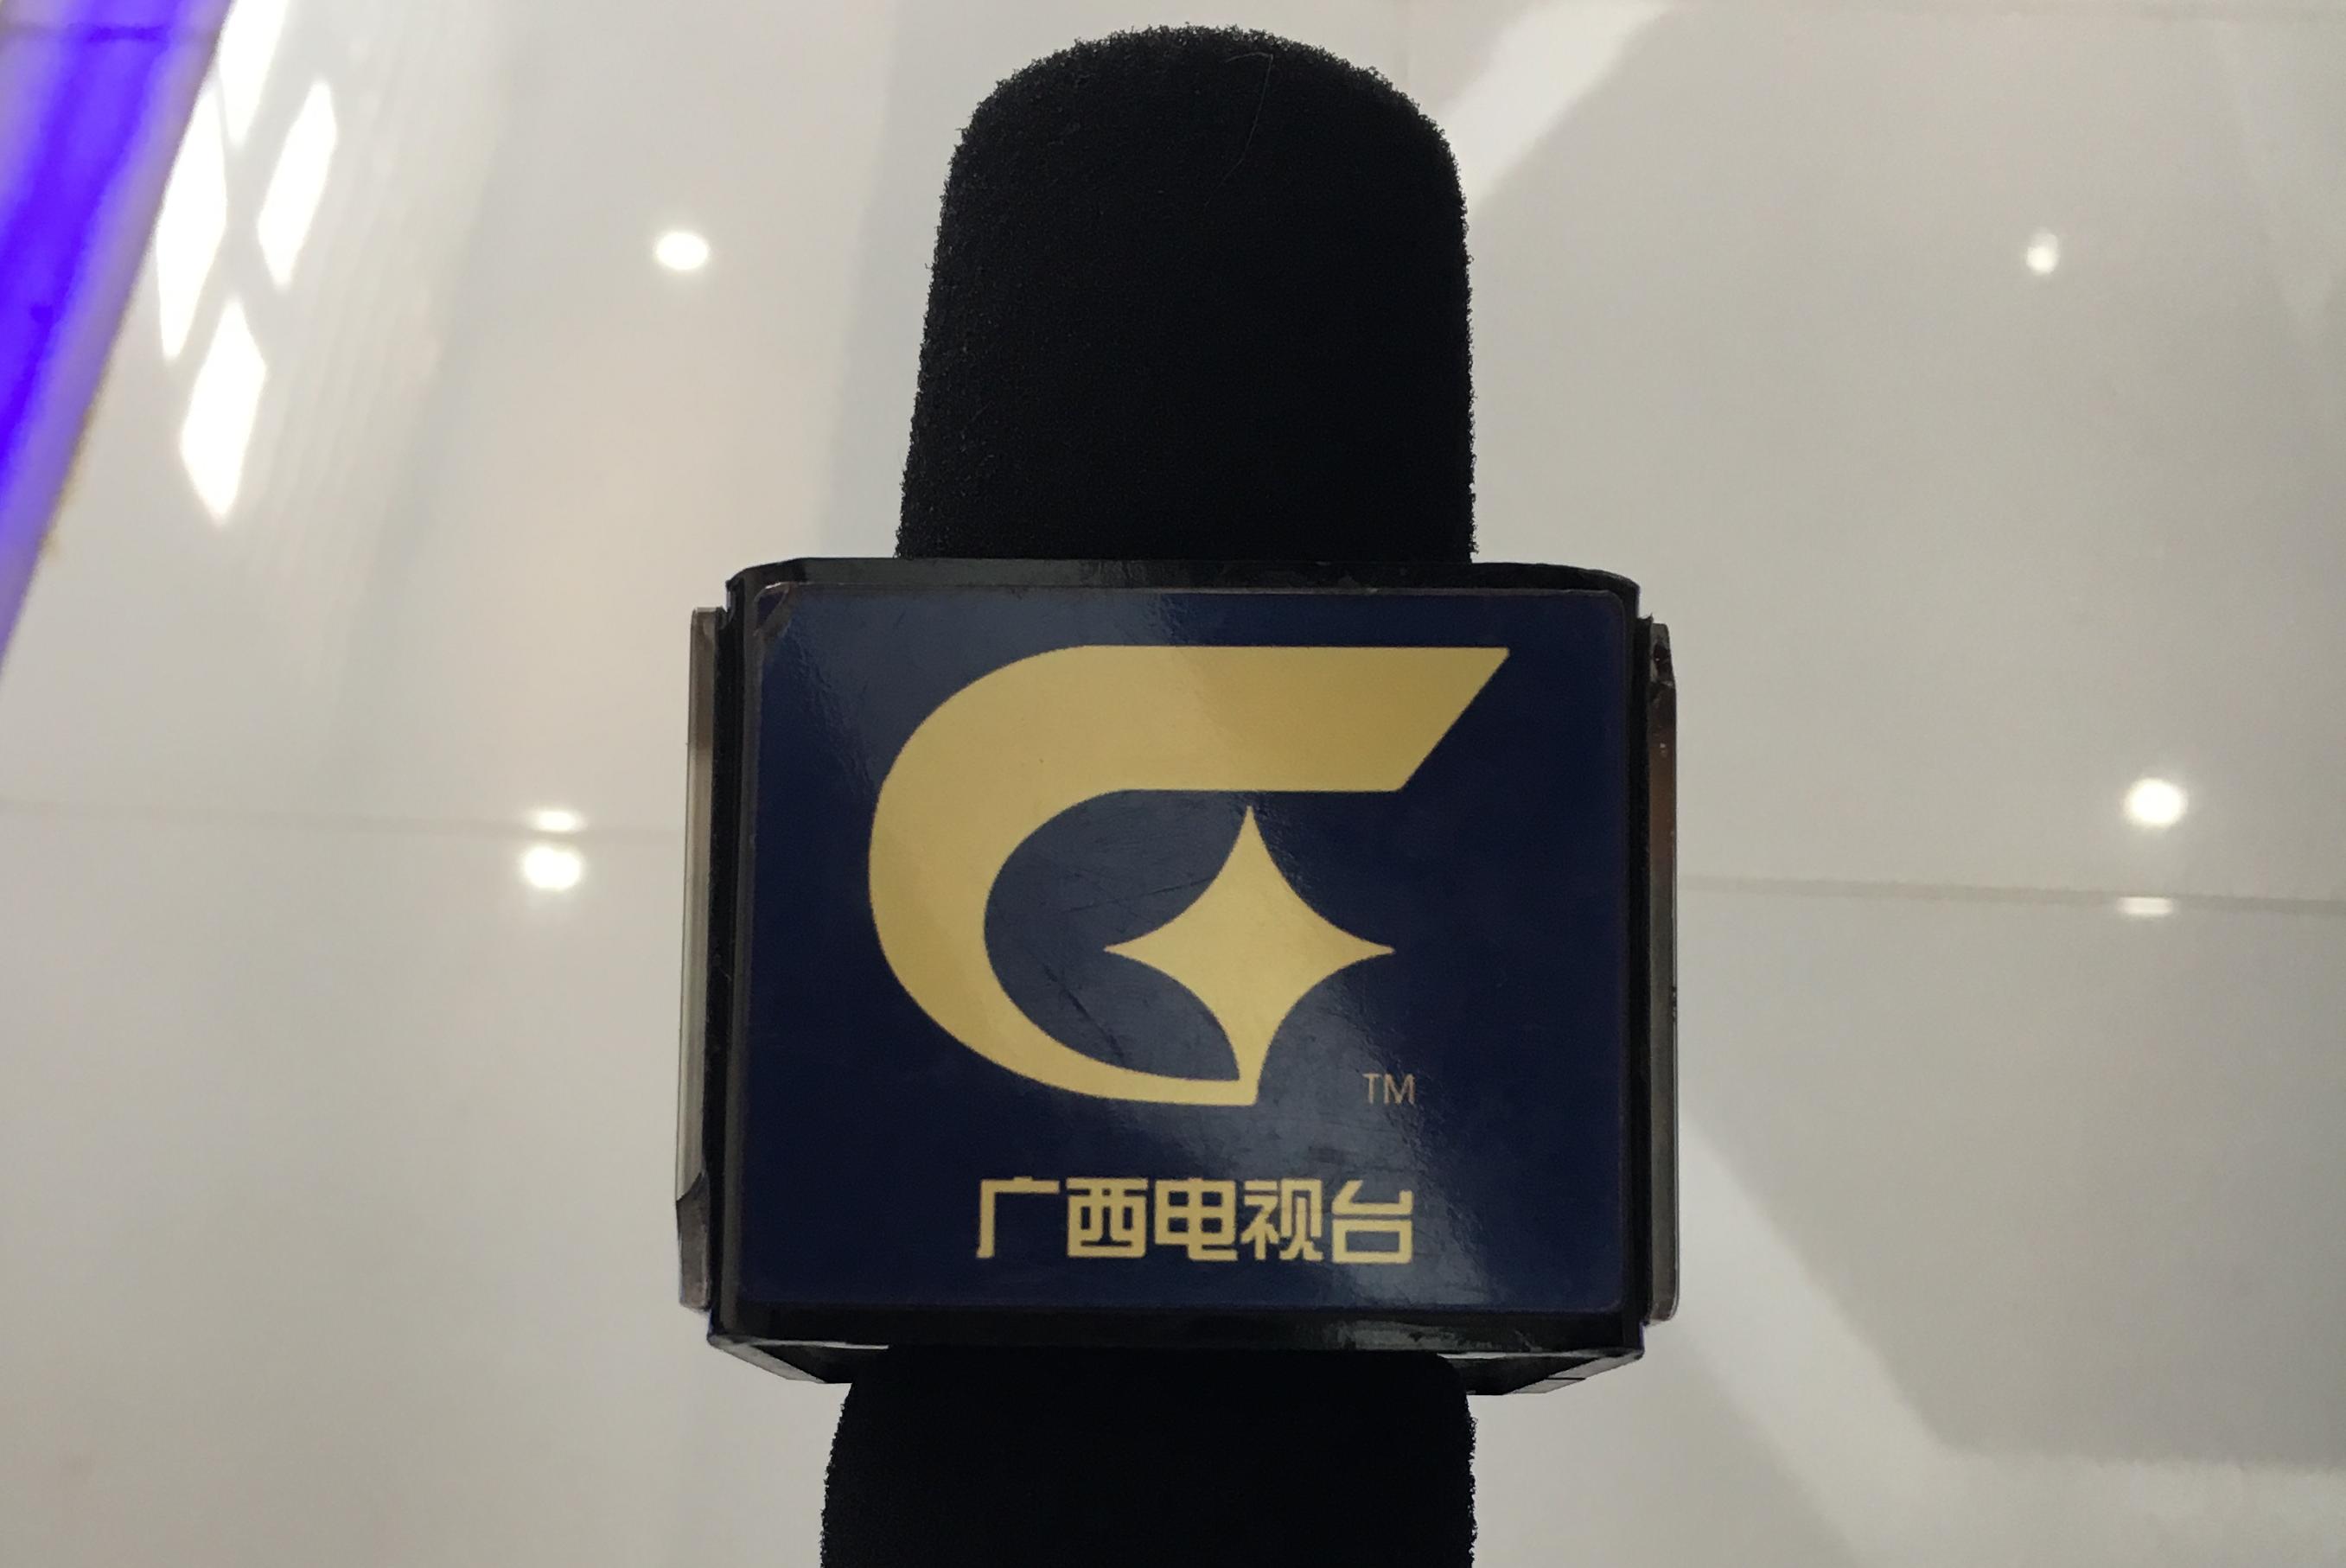 广西电视台八桂新风采图片